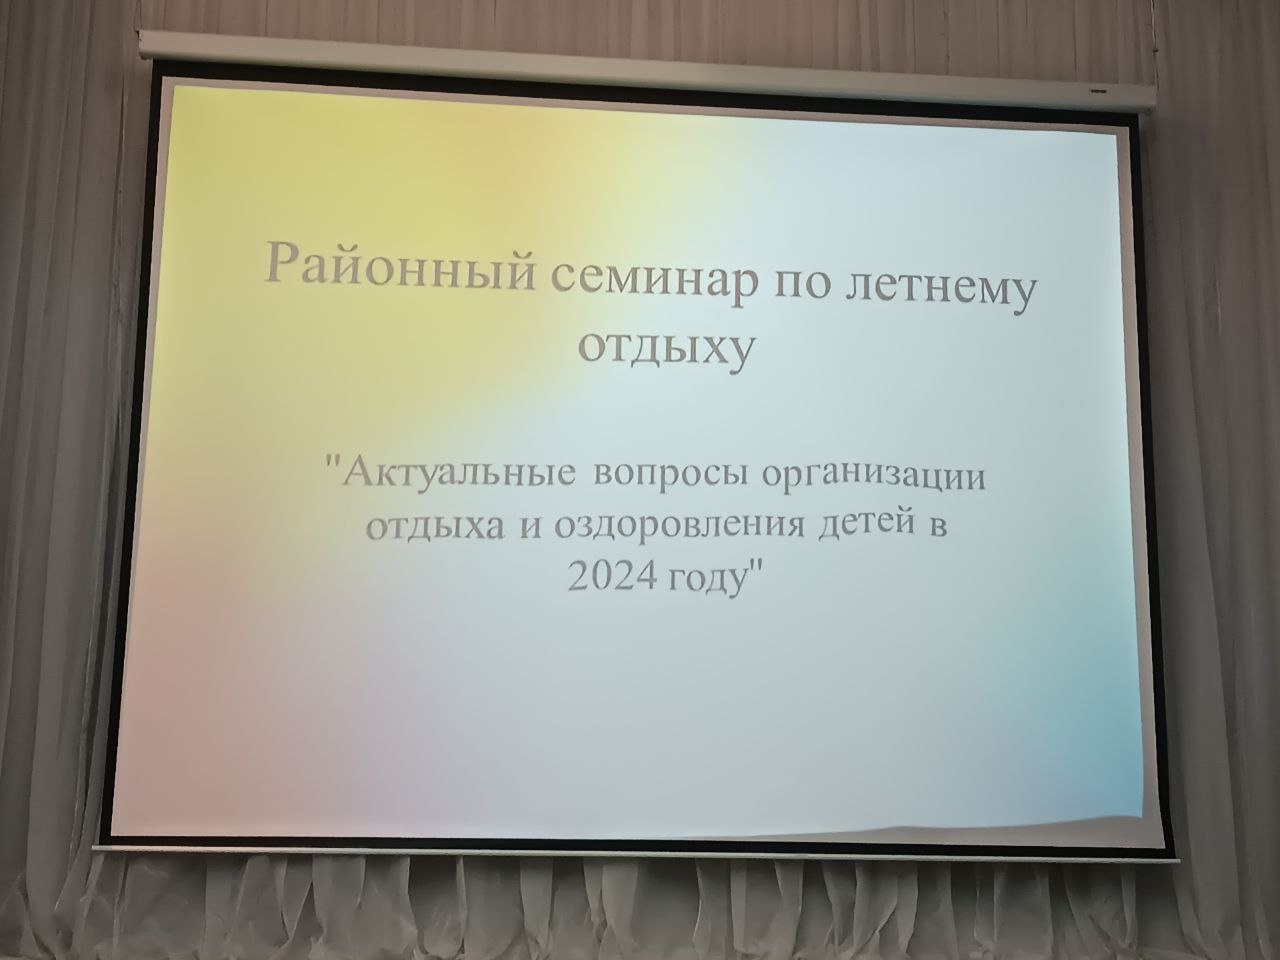 Сотрудники белоярской полиции приняли участие в районном семинаре по вопросам организации летнего отдыха и оздоровления детей в 2024 году